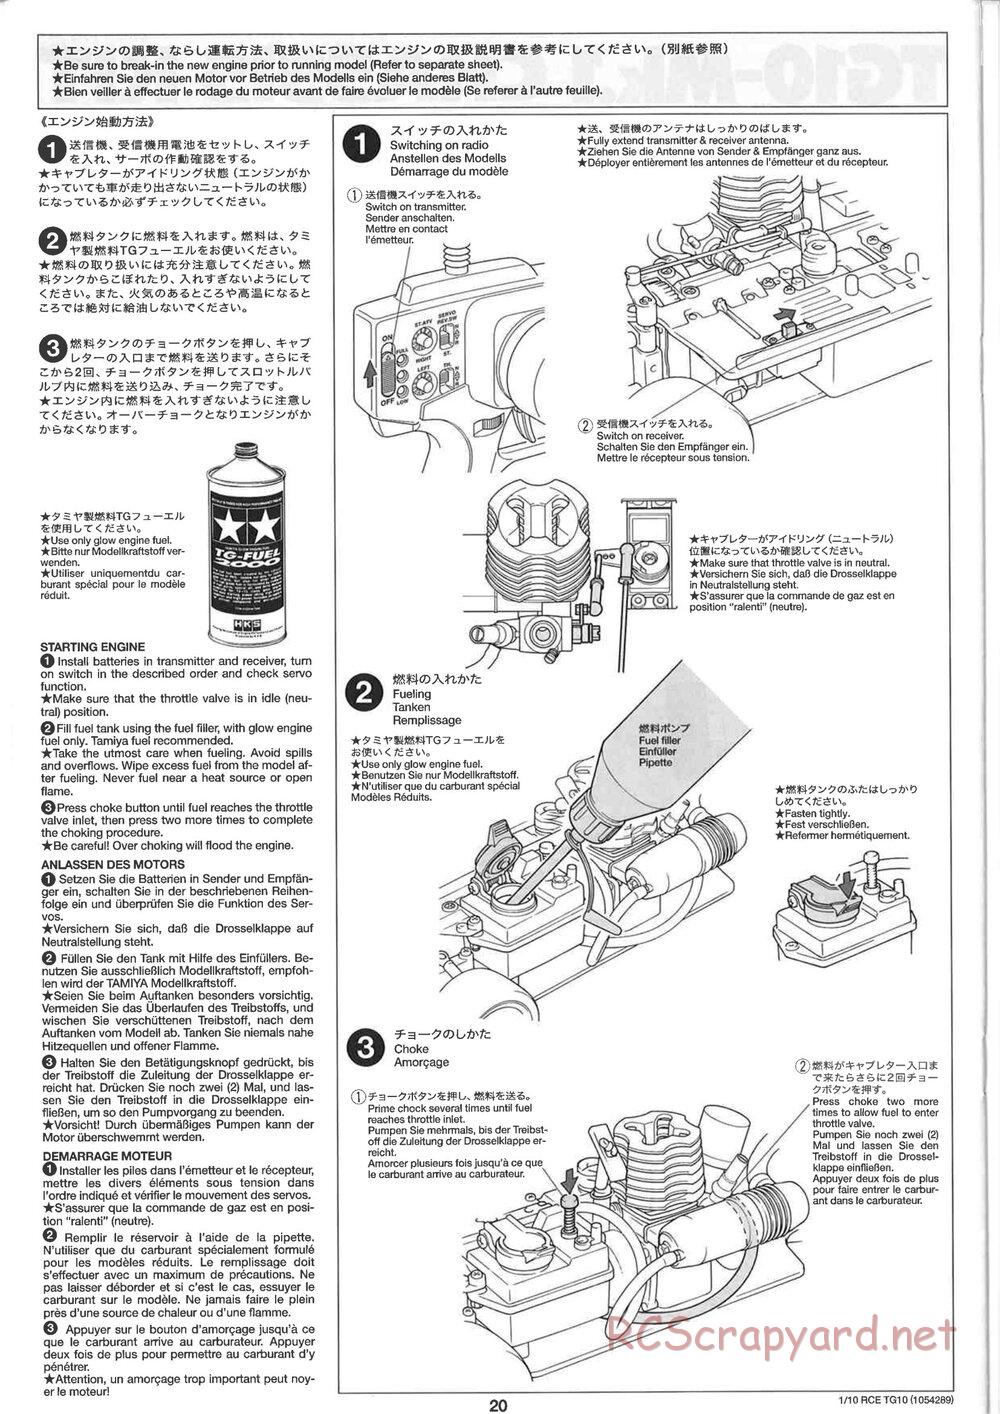 Tamiya - TG10 Mk.1 Chassis - Manual - Page 20